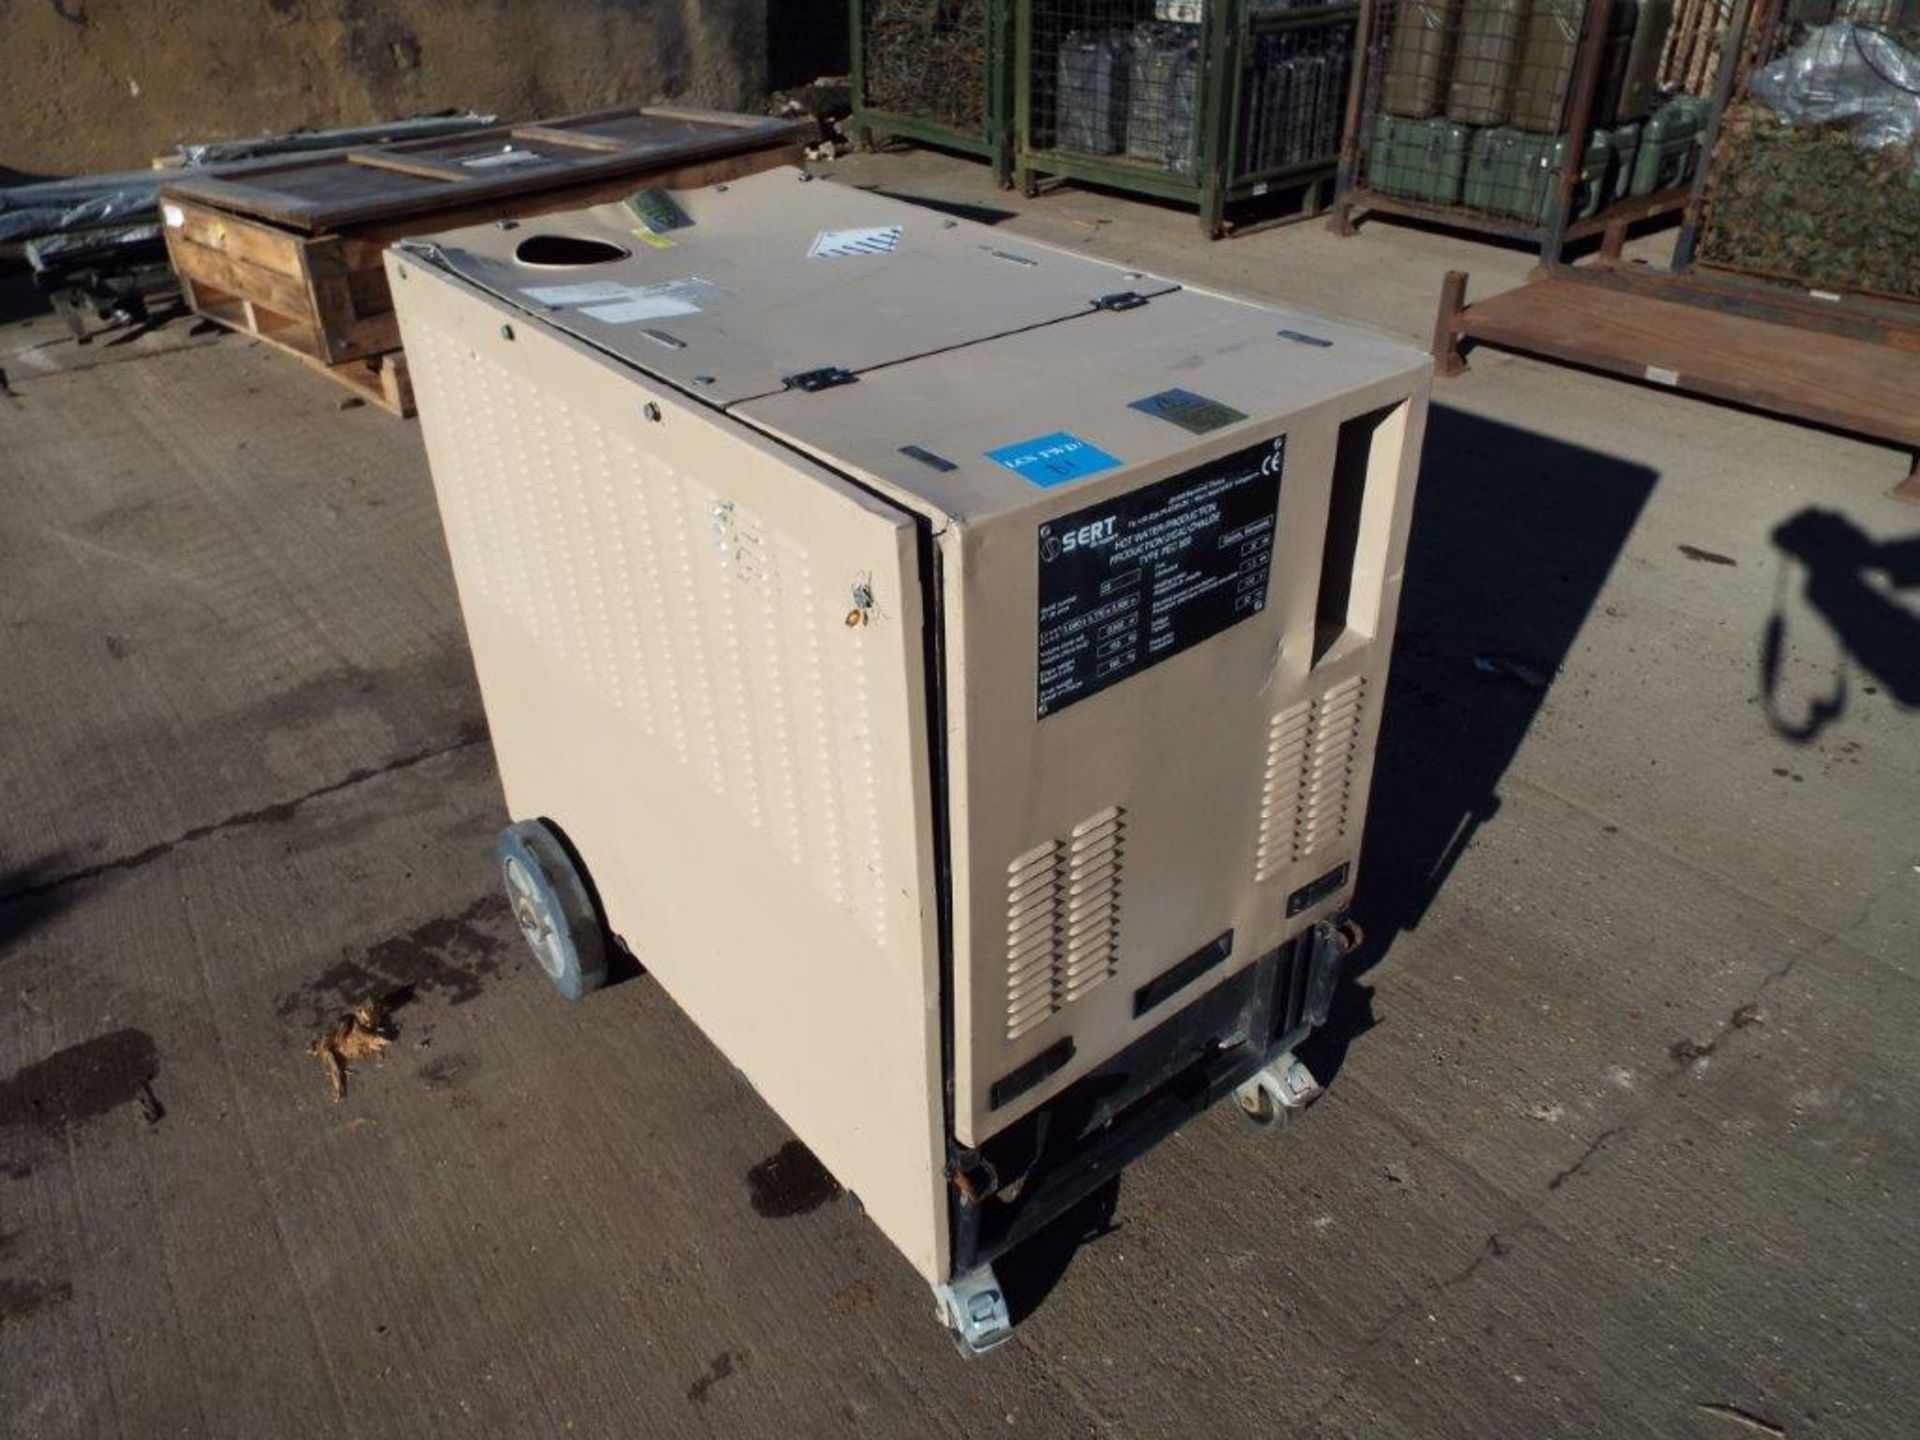 Sert PEC 800 Diesel/Kerosene Fired Field Water Heater